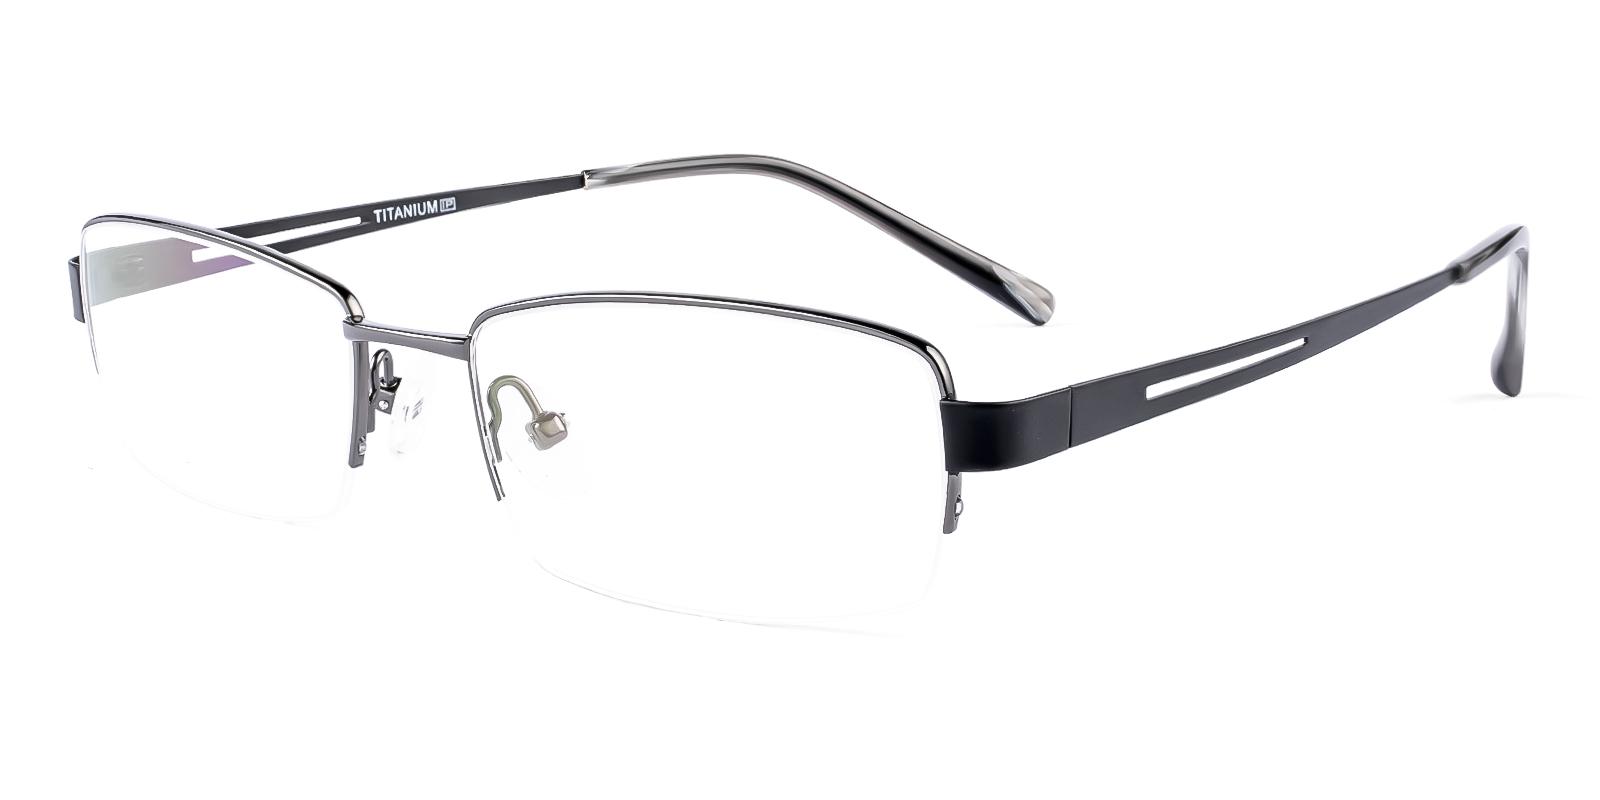 Battar Black Titanium Eyeglasses , NosePads Frames from ABBE Glasses